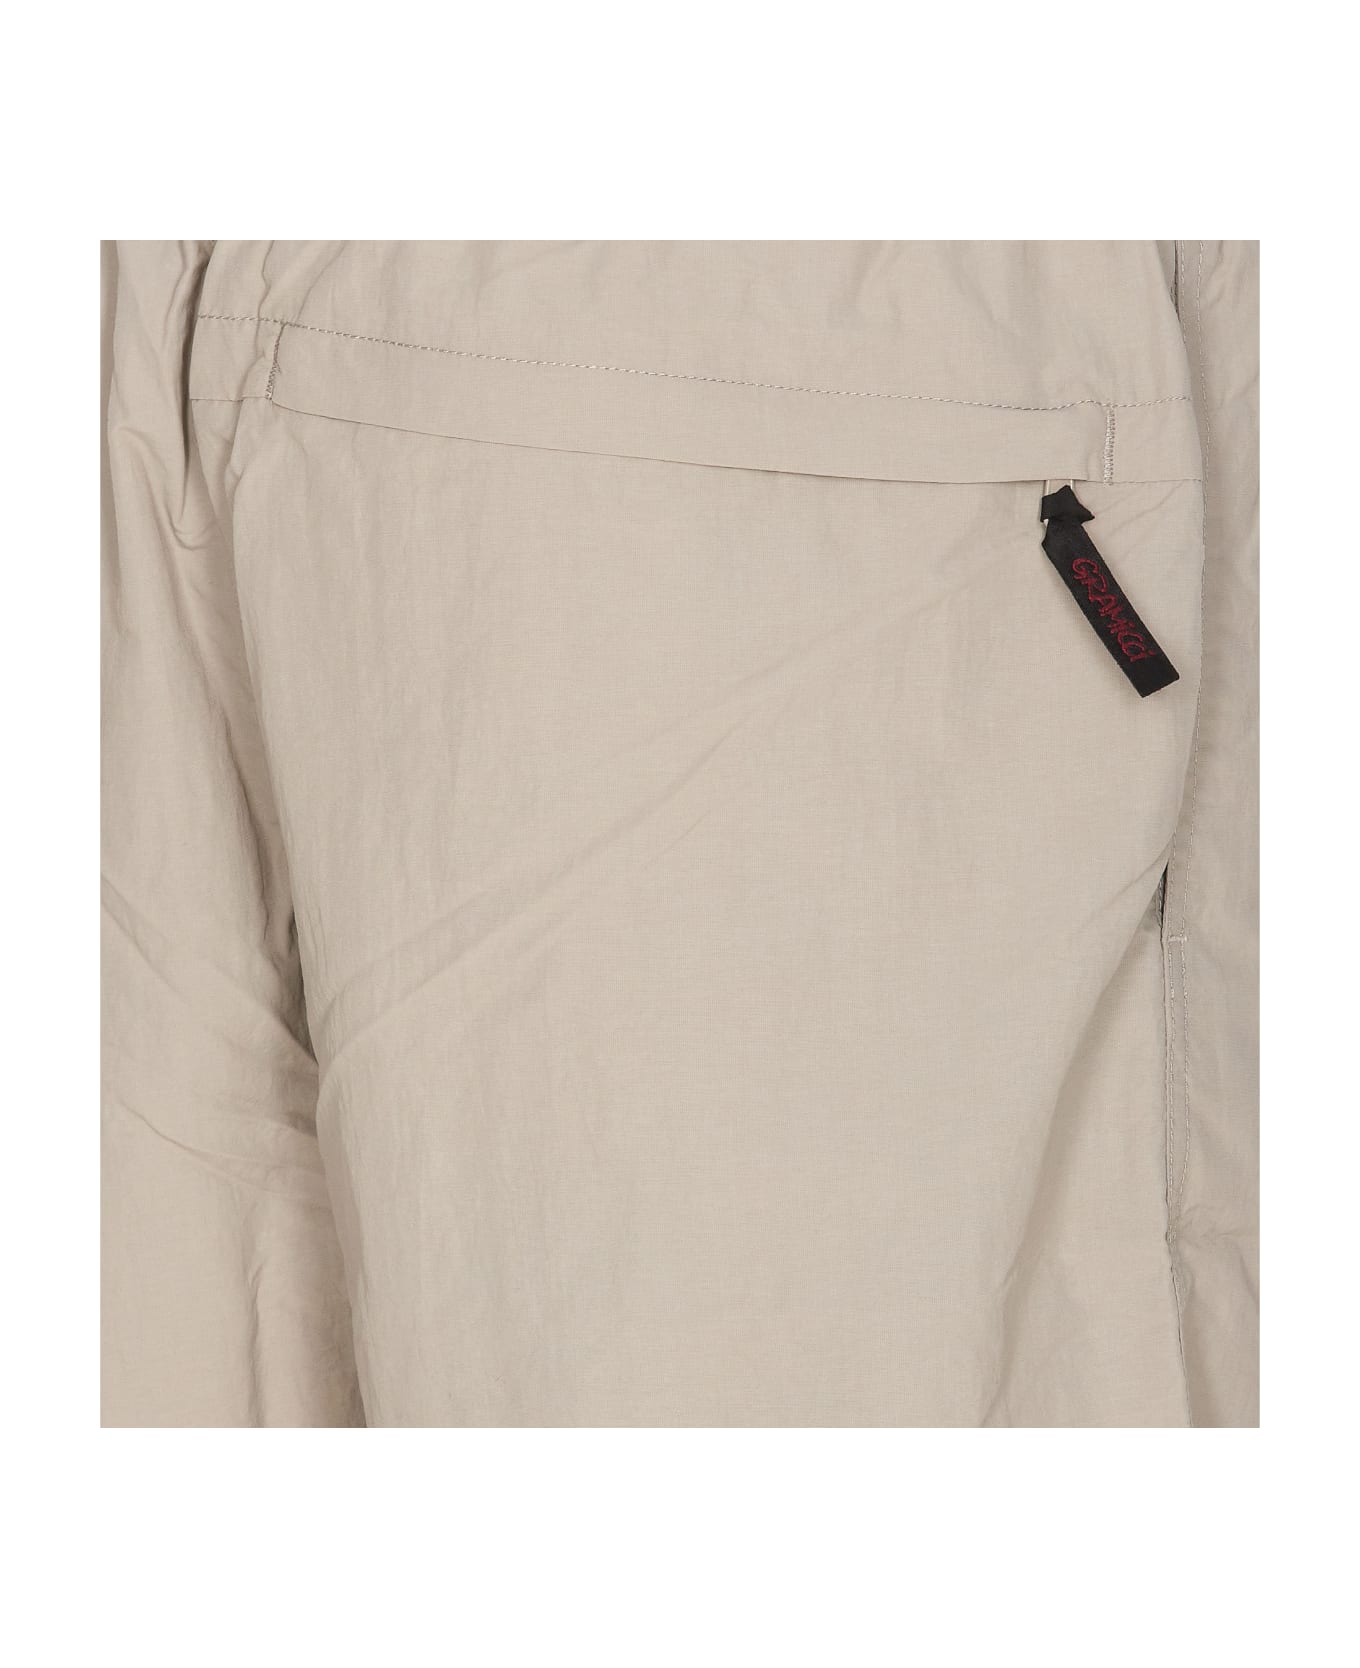 Gramicci Nylon Packable G-shorts - Beige ショートパンツ